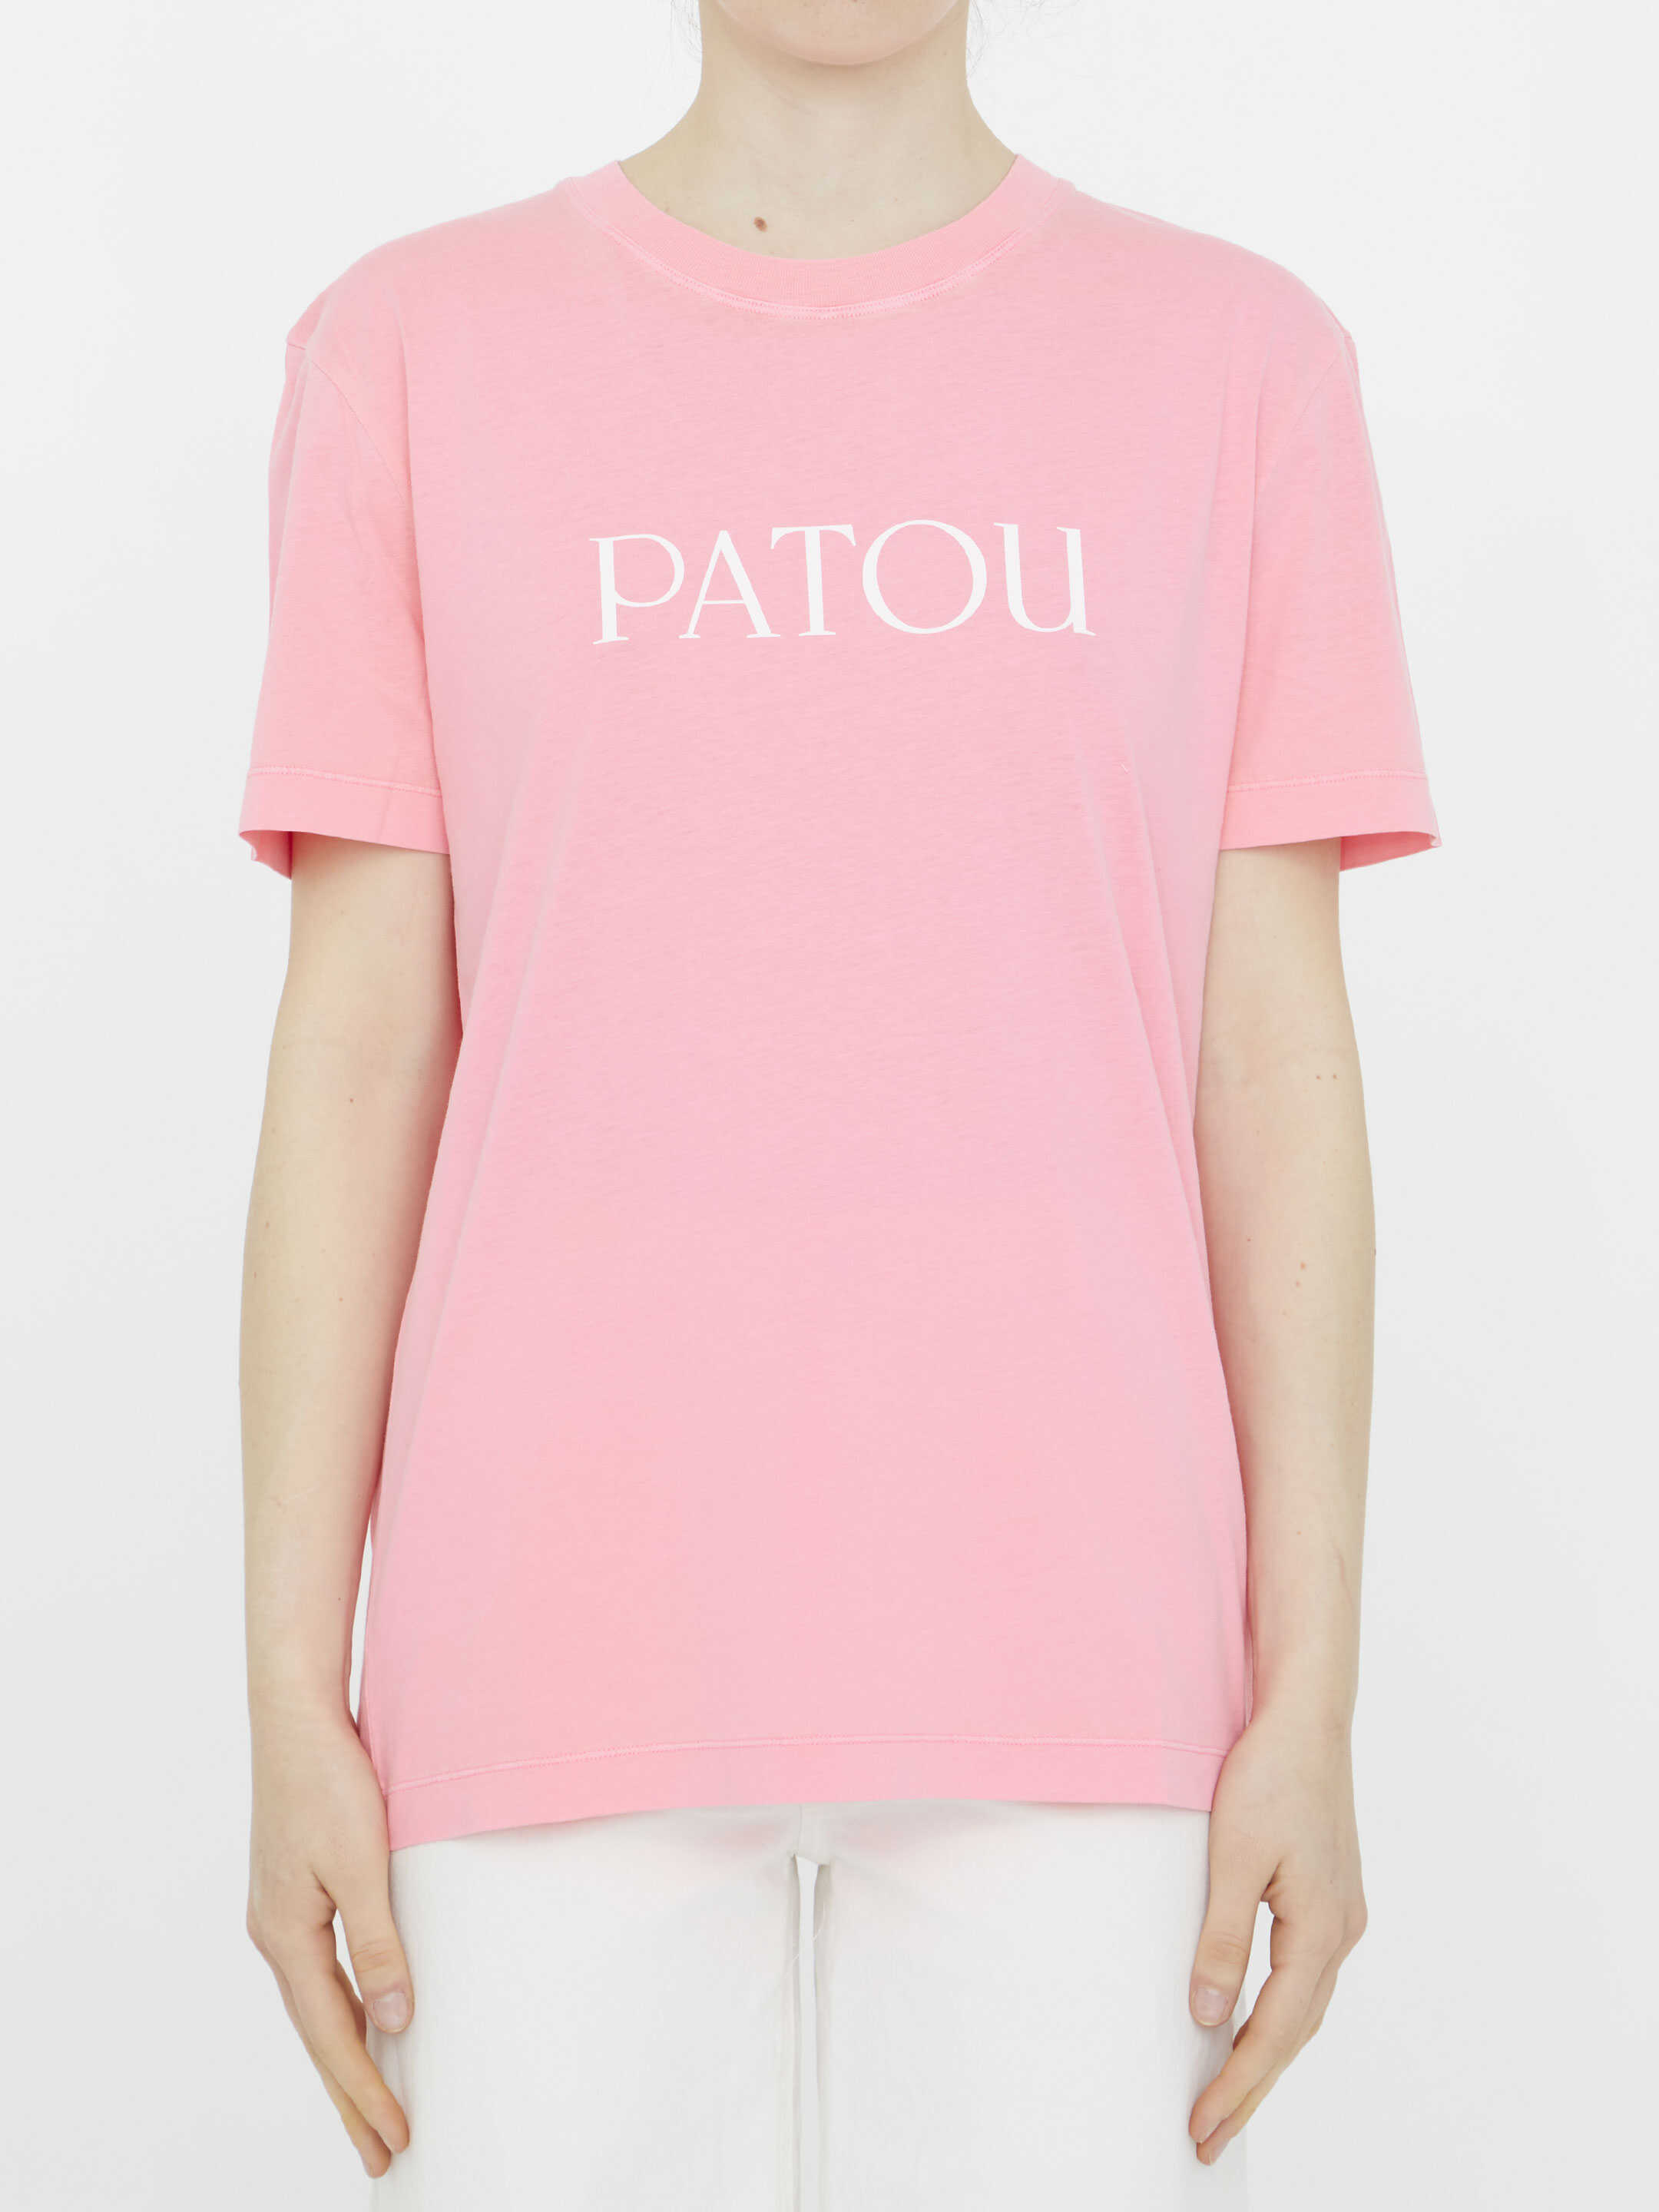 Patou Patou Logo T-Shirt Pink